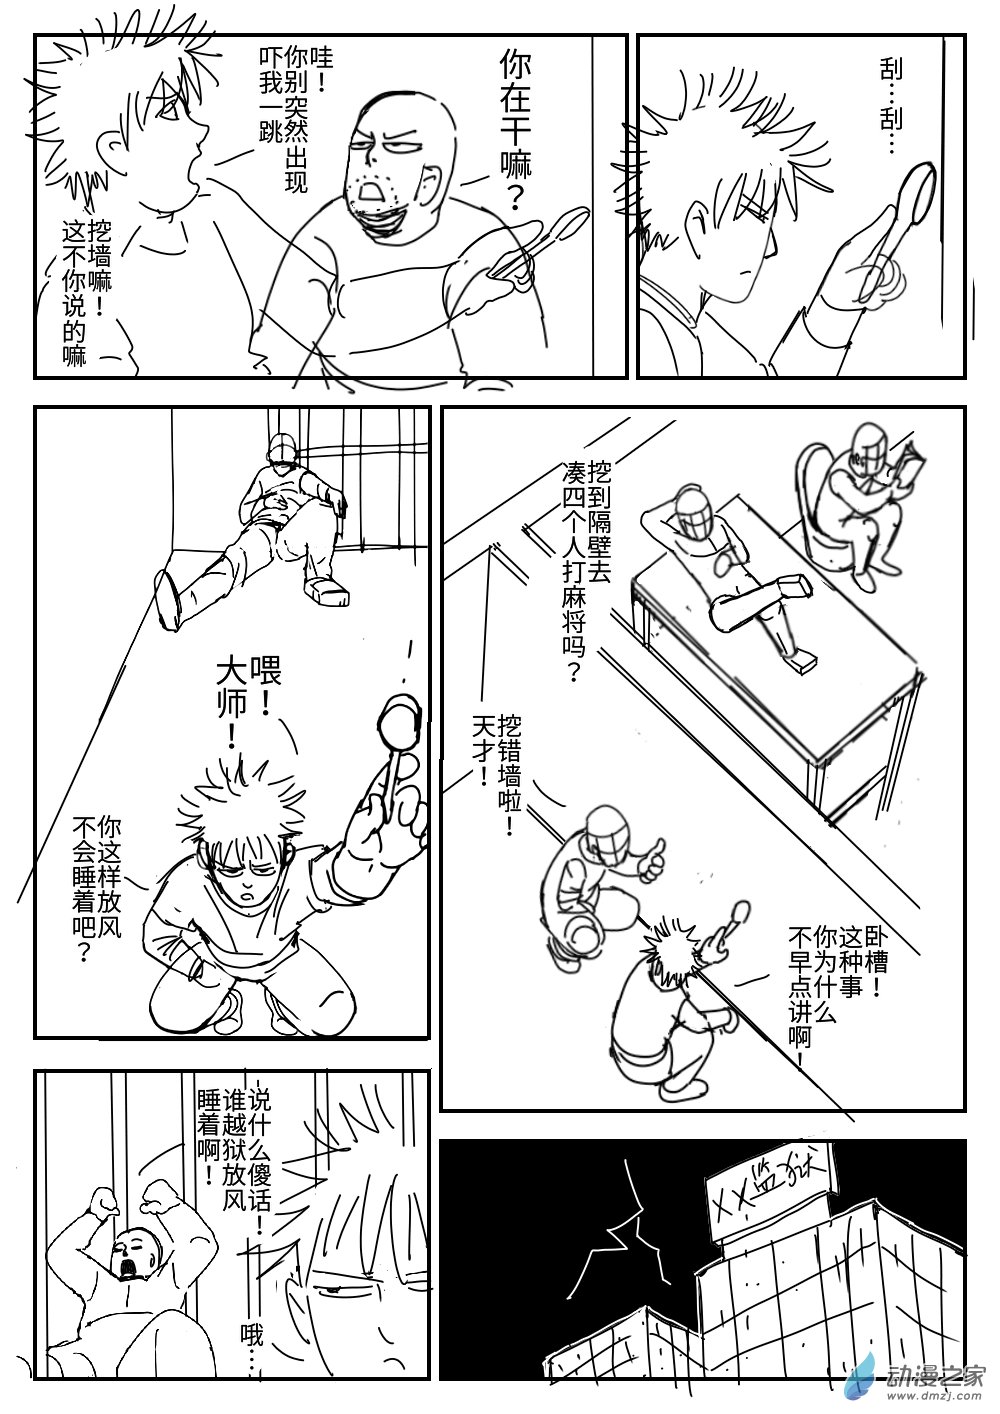 K神的短篇漫畫集 - 04 越獄 - 6